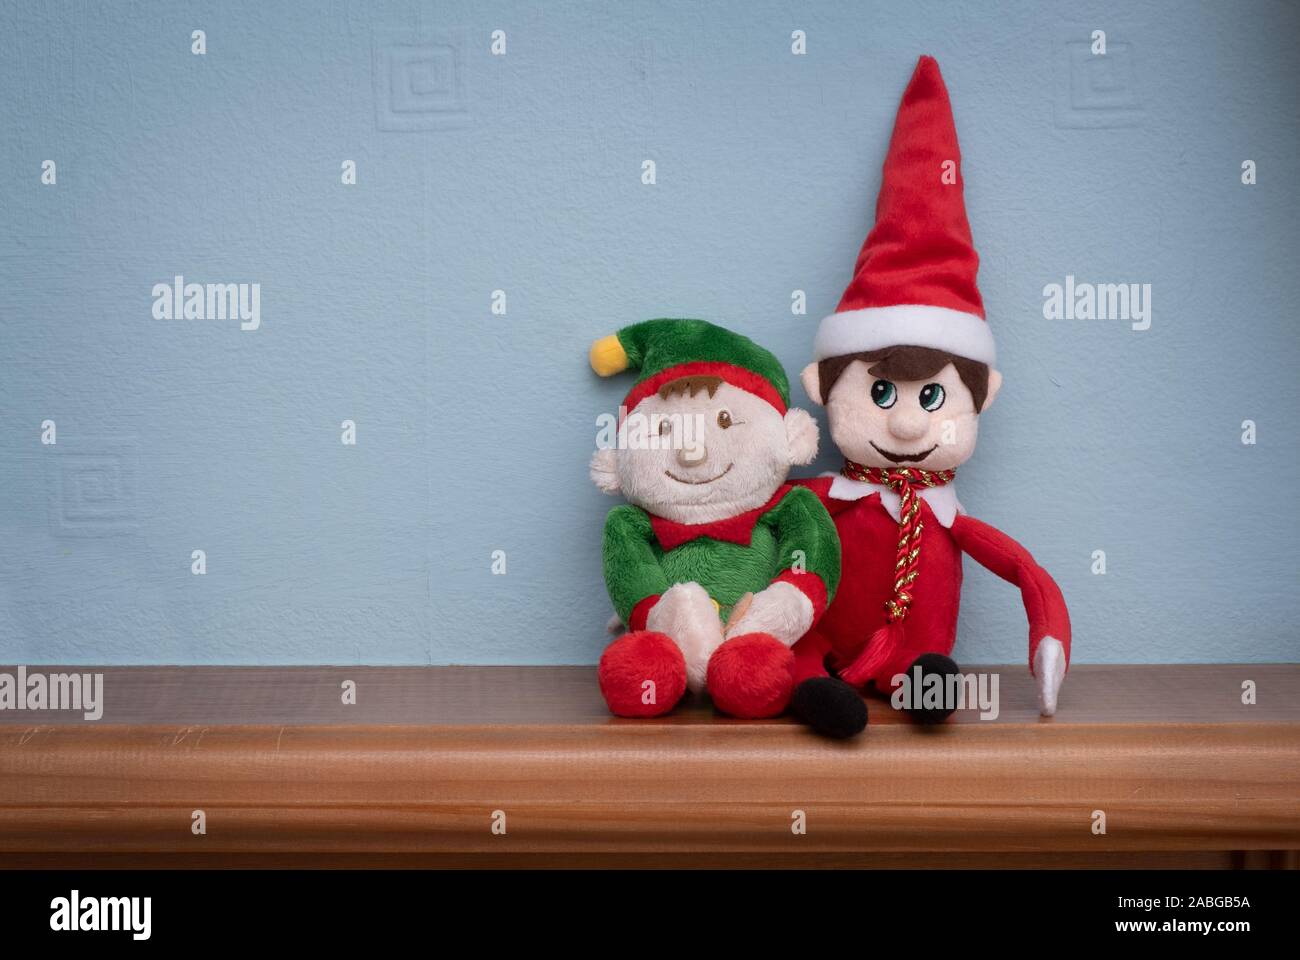 Weihnachten Elf und sein Freund, der elf in allen Formen und Größen gibt. Süße Tradition der Senden Santa's elf auf Kinder zu prüfen kurz vor christm Stockfoto